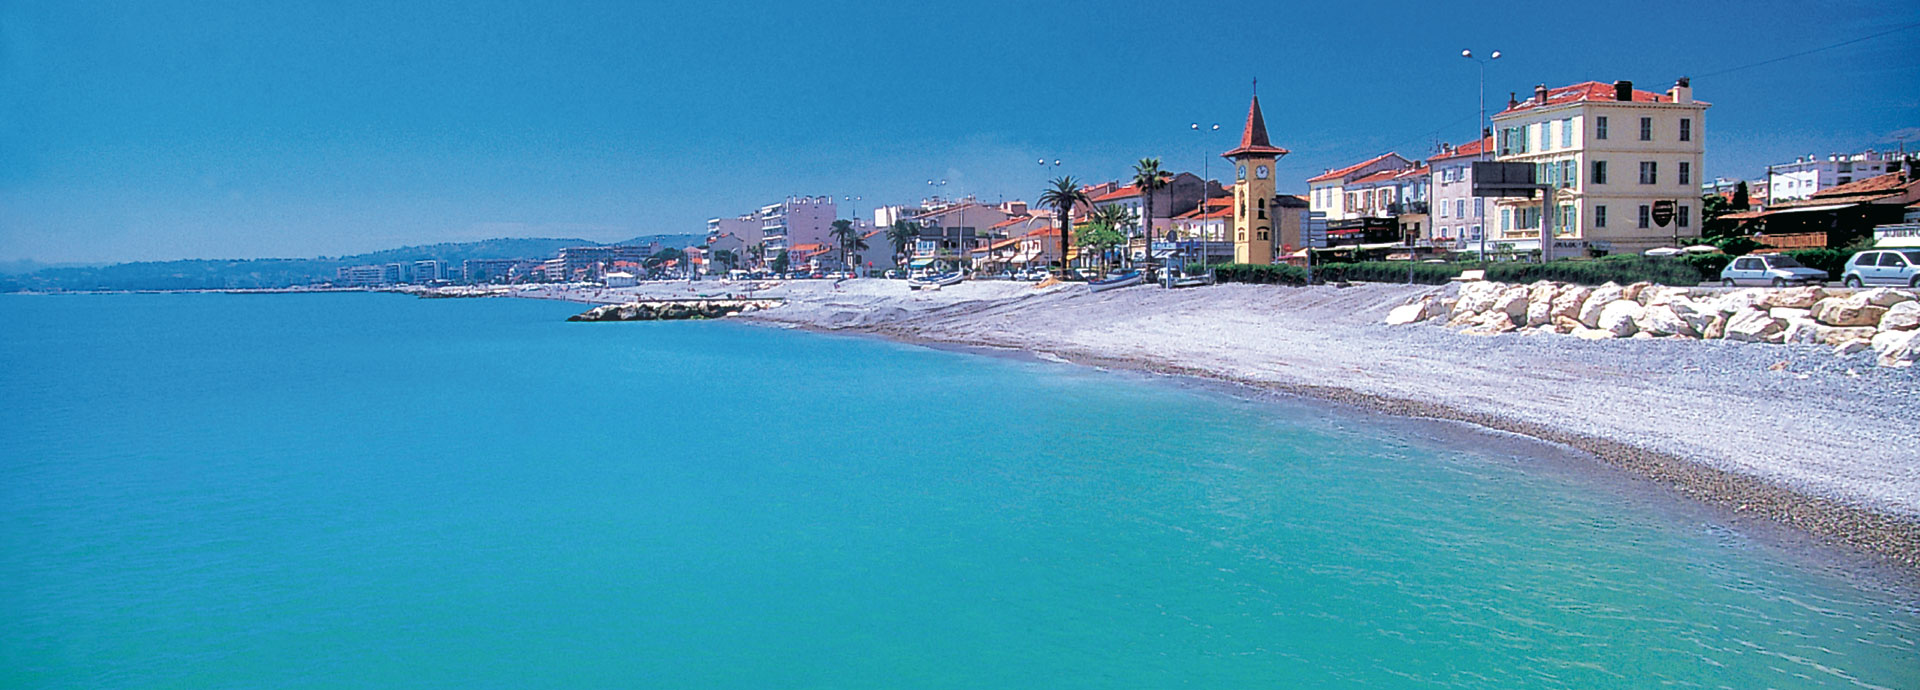 Cagnes-sur-Mer sur la Côte d'Azur : location vacances dans les Alpes-Maritimes